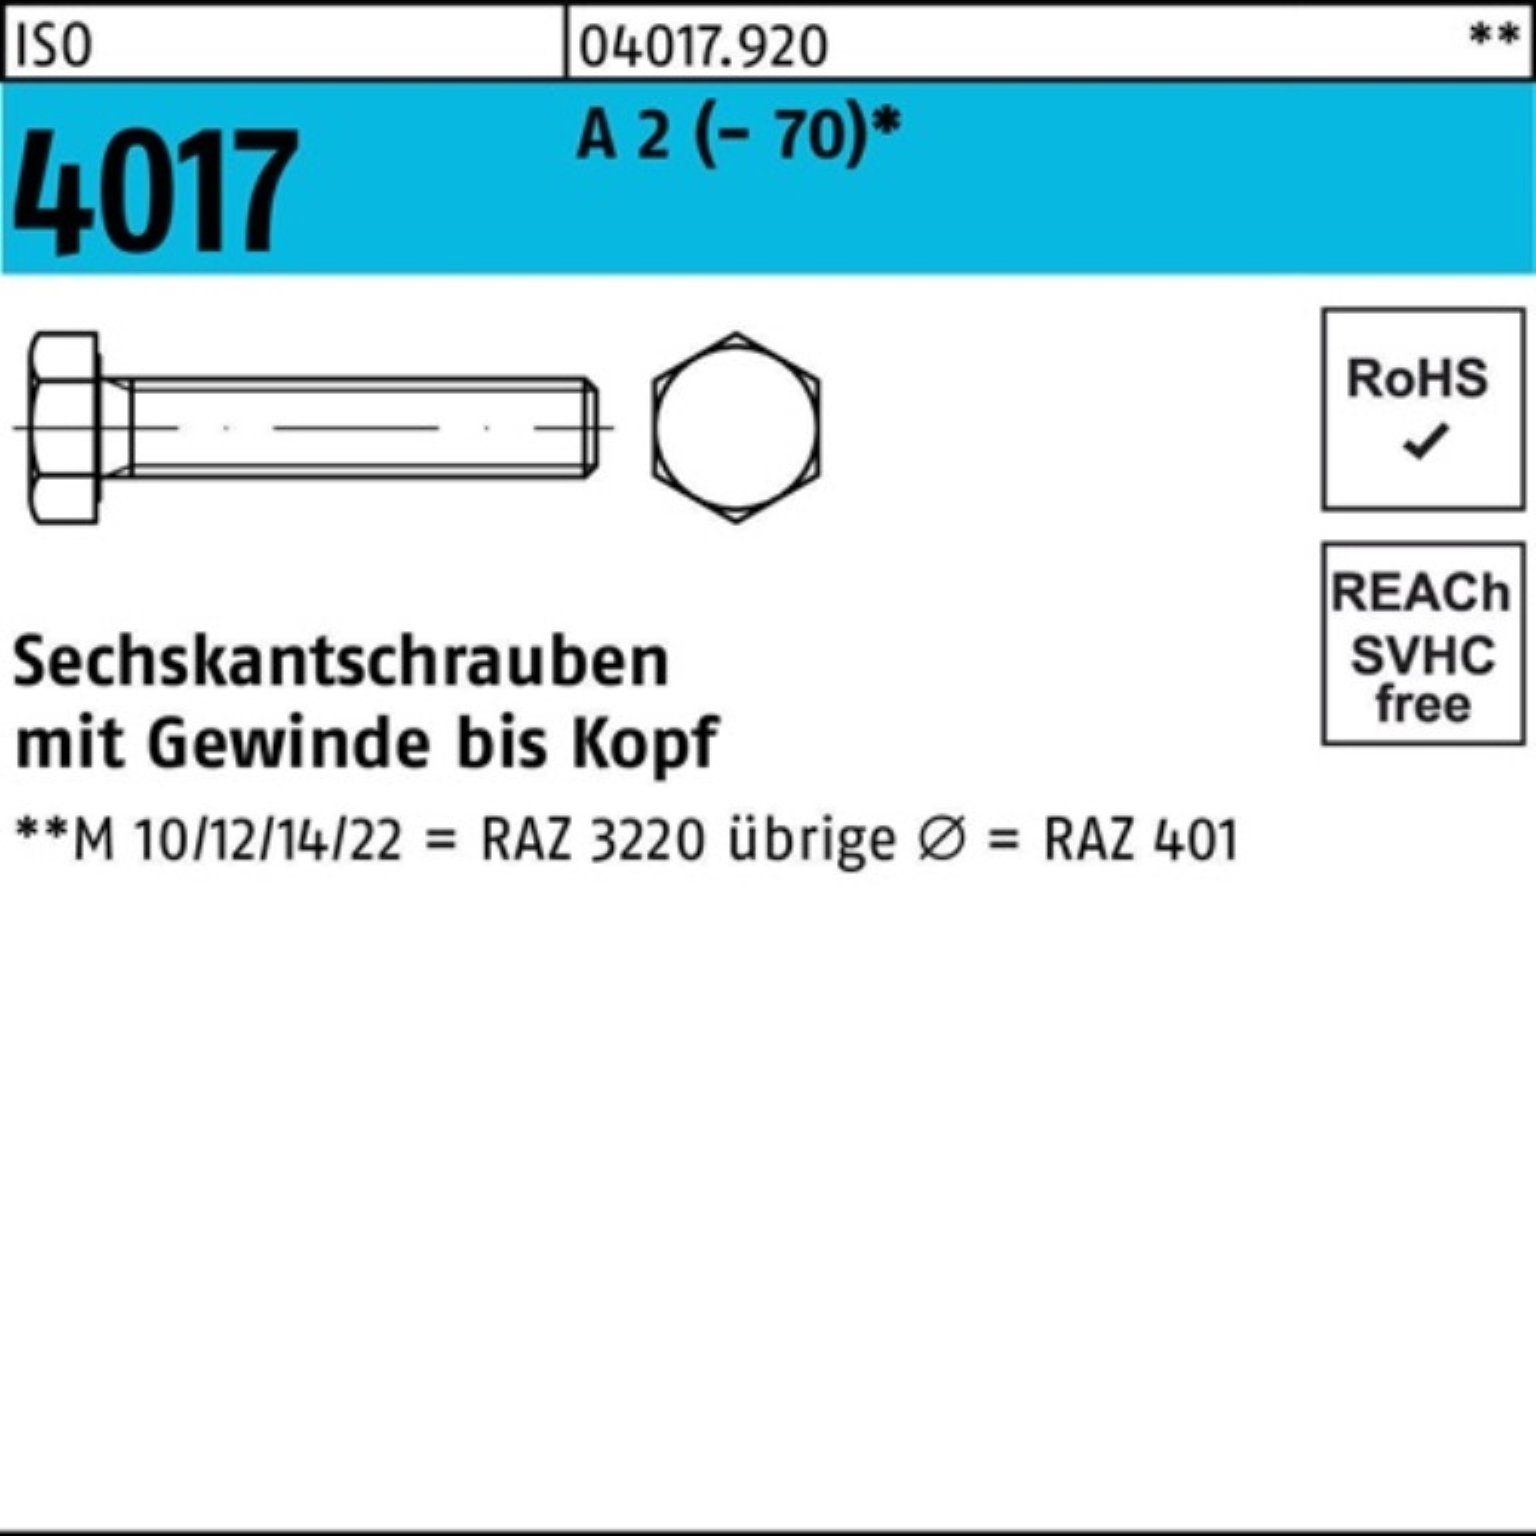 Bufab Sechskantschraube 100er 4017 50 M14x A Stück ISO (70) 25 2 Pack VG Sechskantschraube